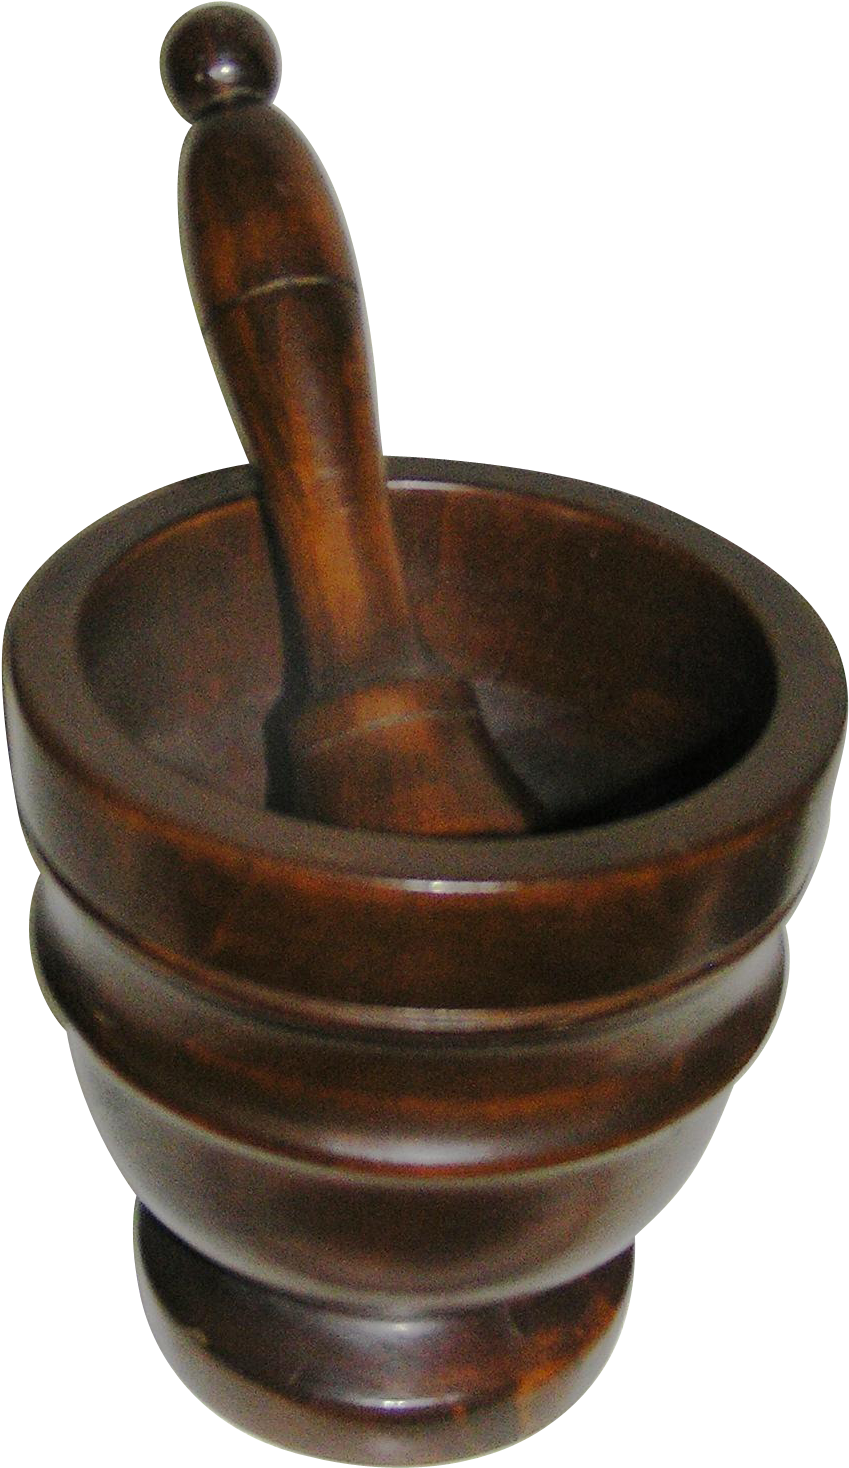 Vintage Mortar And Pistle, Wood, Turned Burled Hardwood - Antique (1467x1467), Png Download